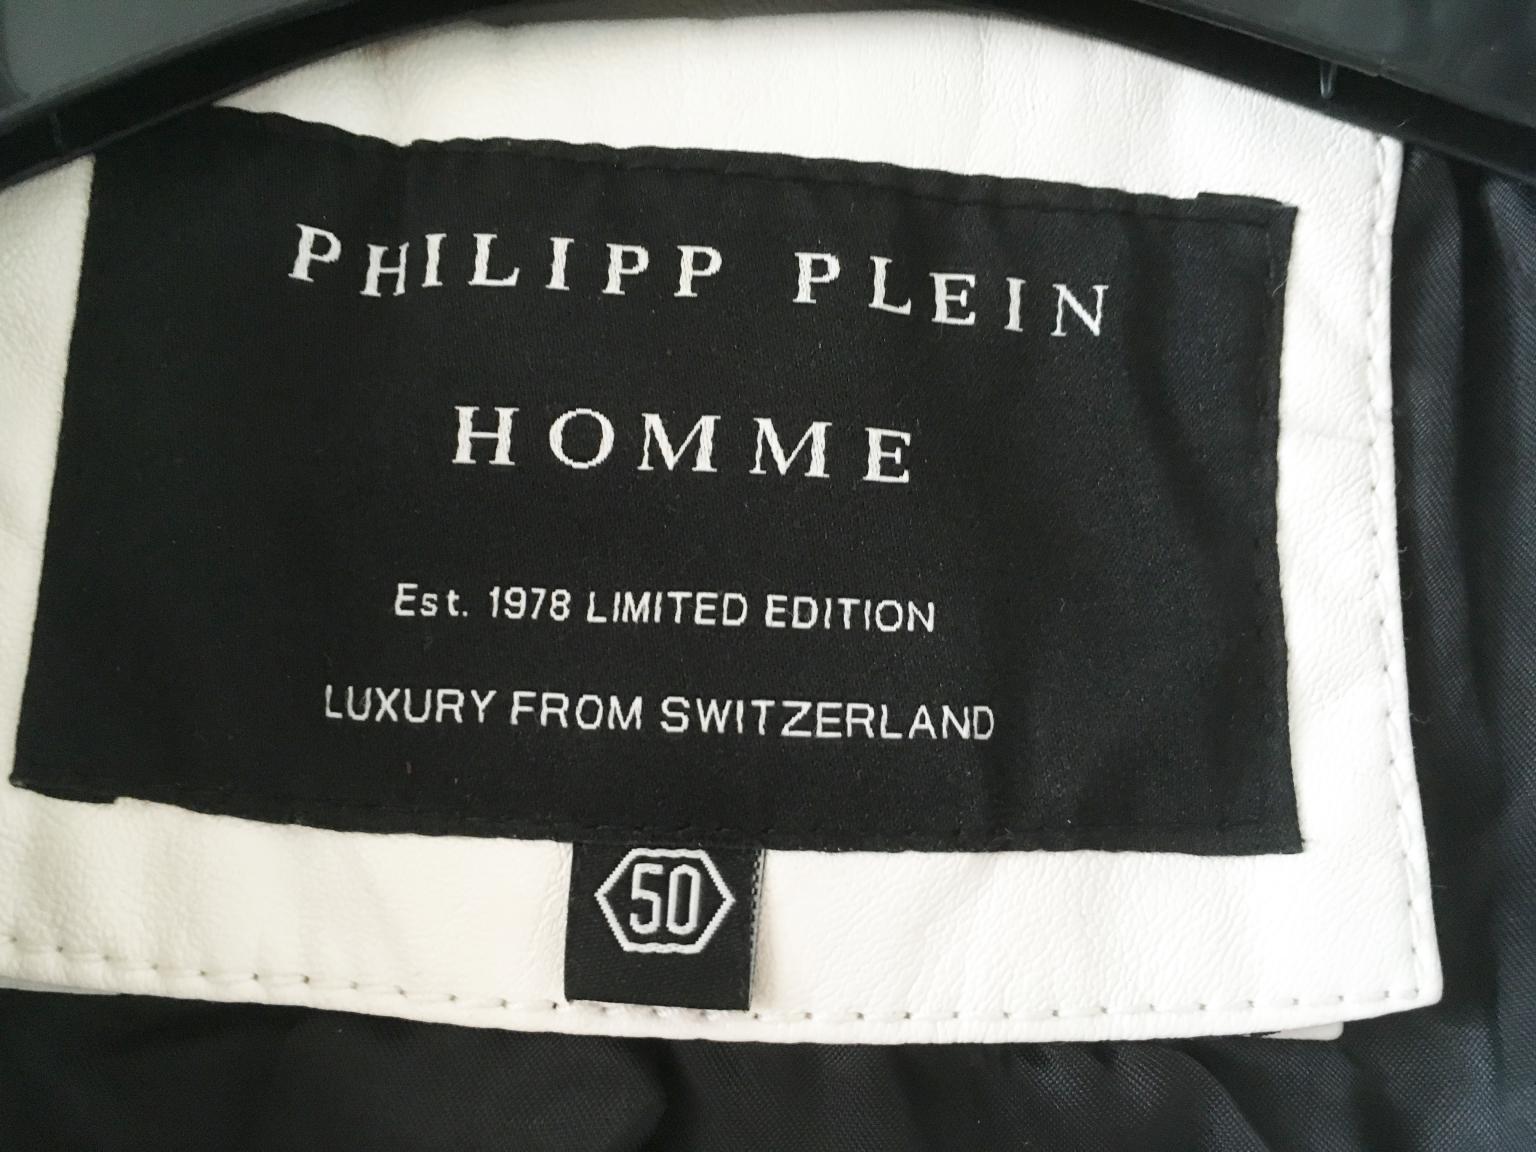 philipp plein est 1978 limited edition switzerland jacket